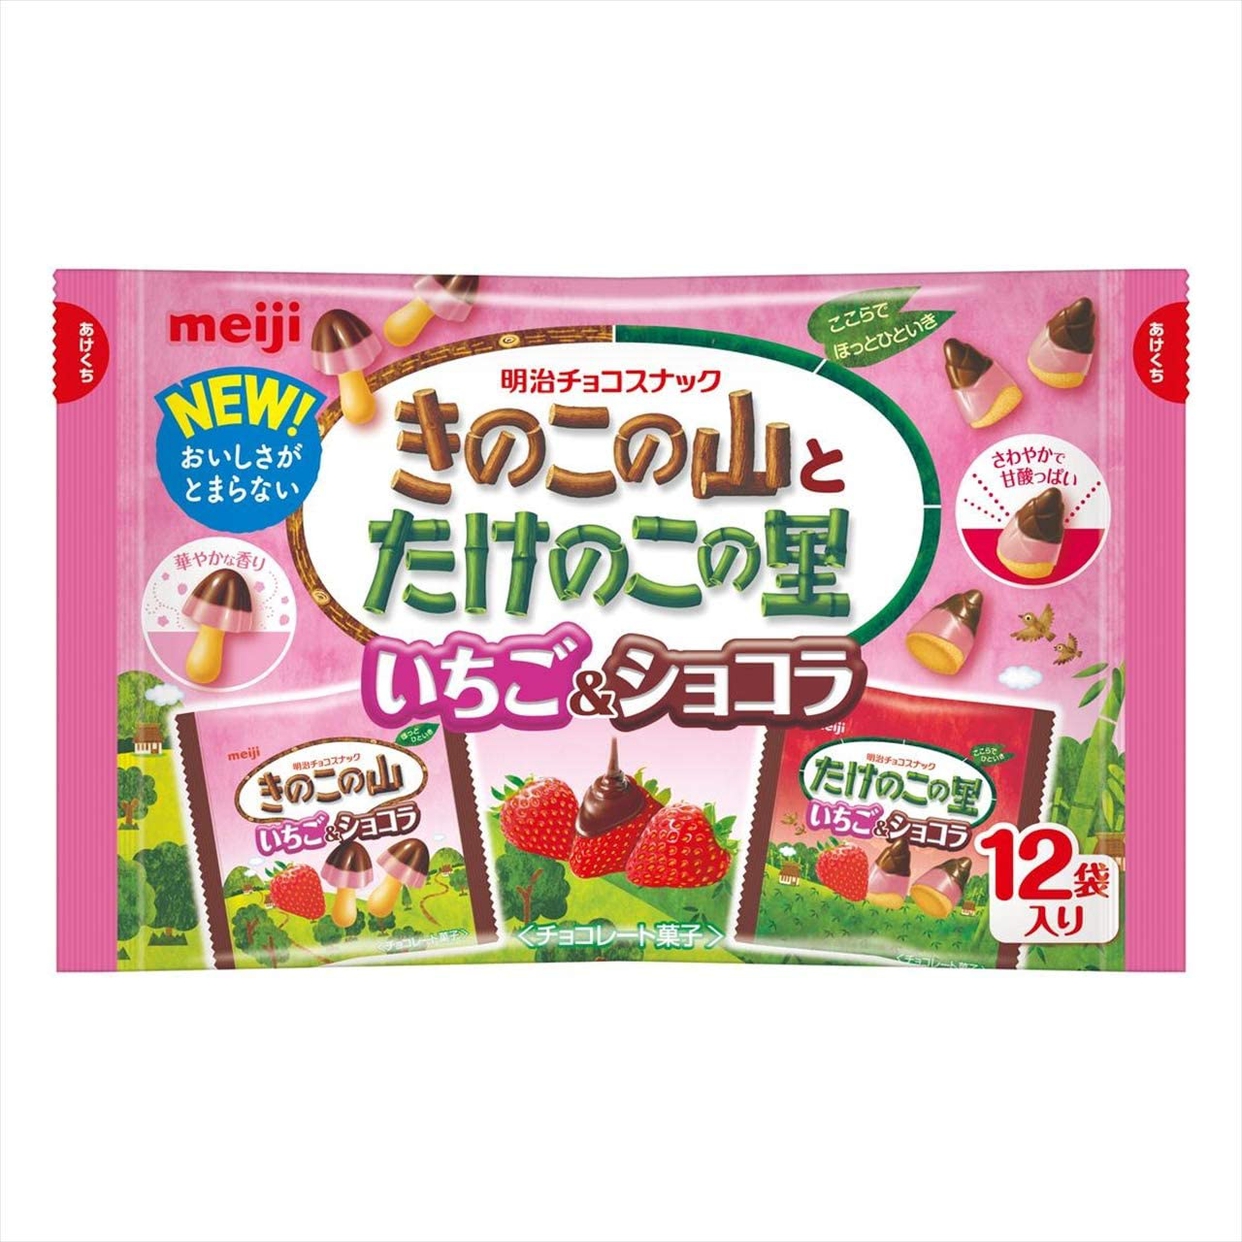 明治(meiji) たけのこの里 いちご&ショコラの商品画像1 